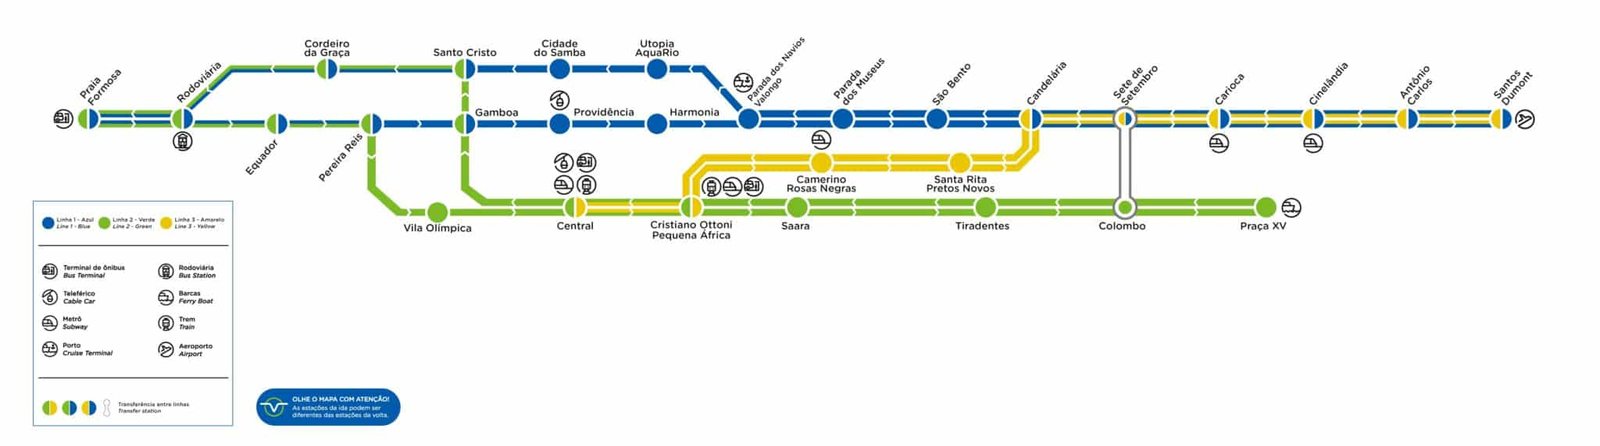 Mapa do VLT Rio de Janeiro, com linhas e estações